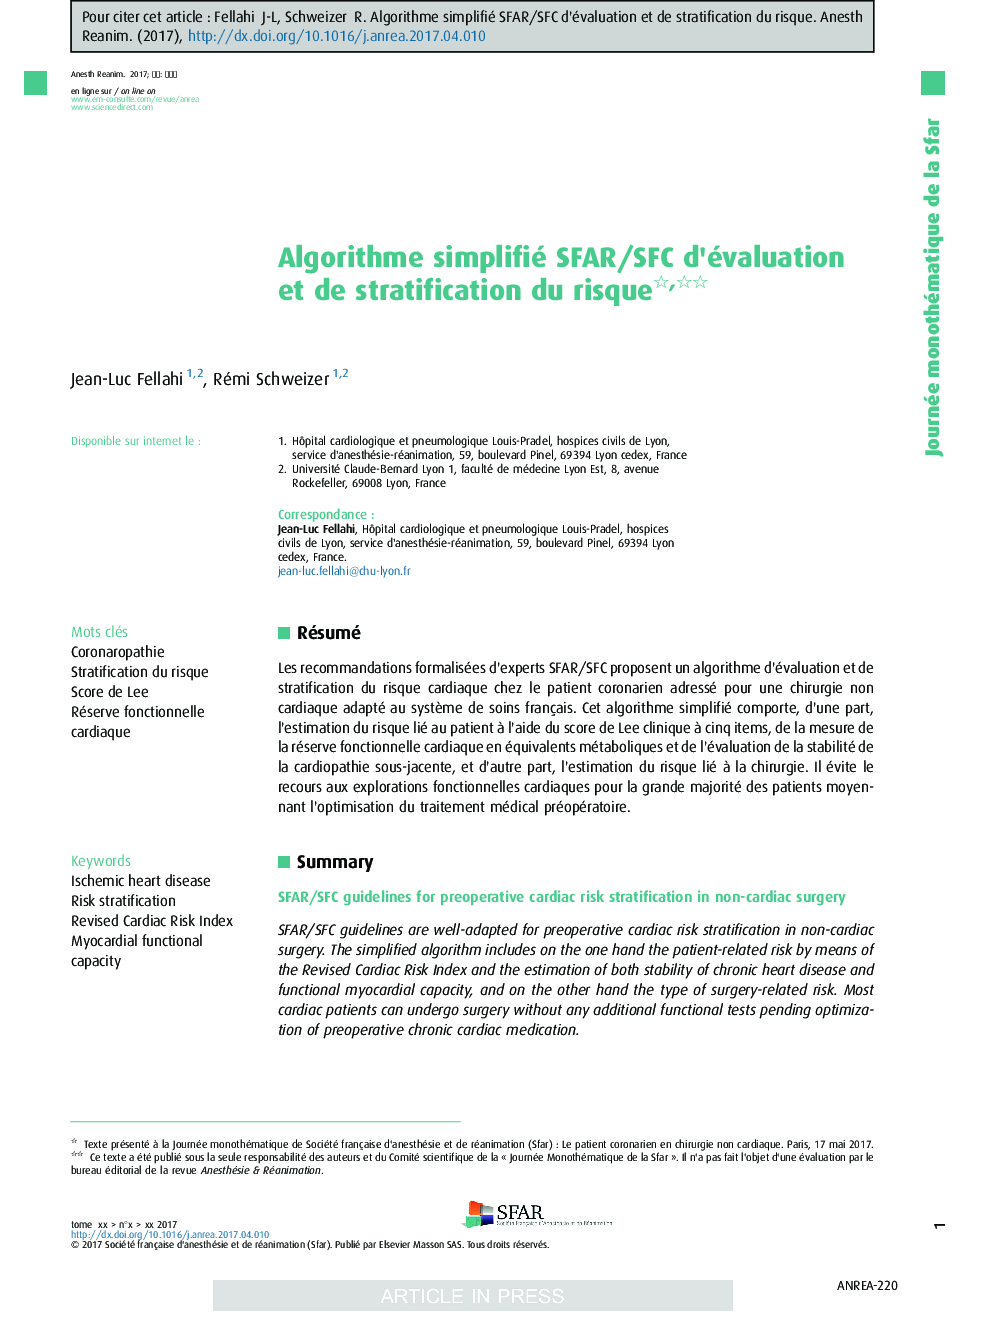 Algorithme simplifié SFAR/SFC d'évaluation et de stratification du risque